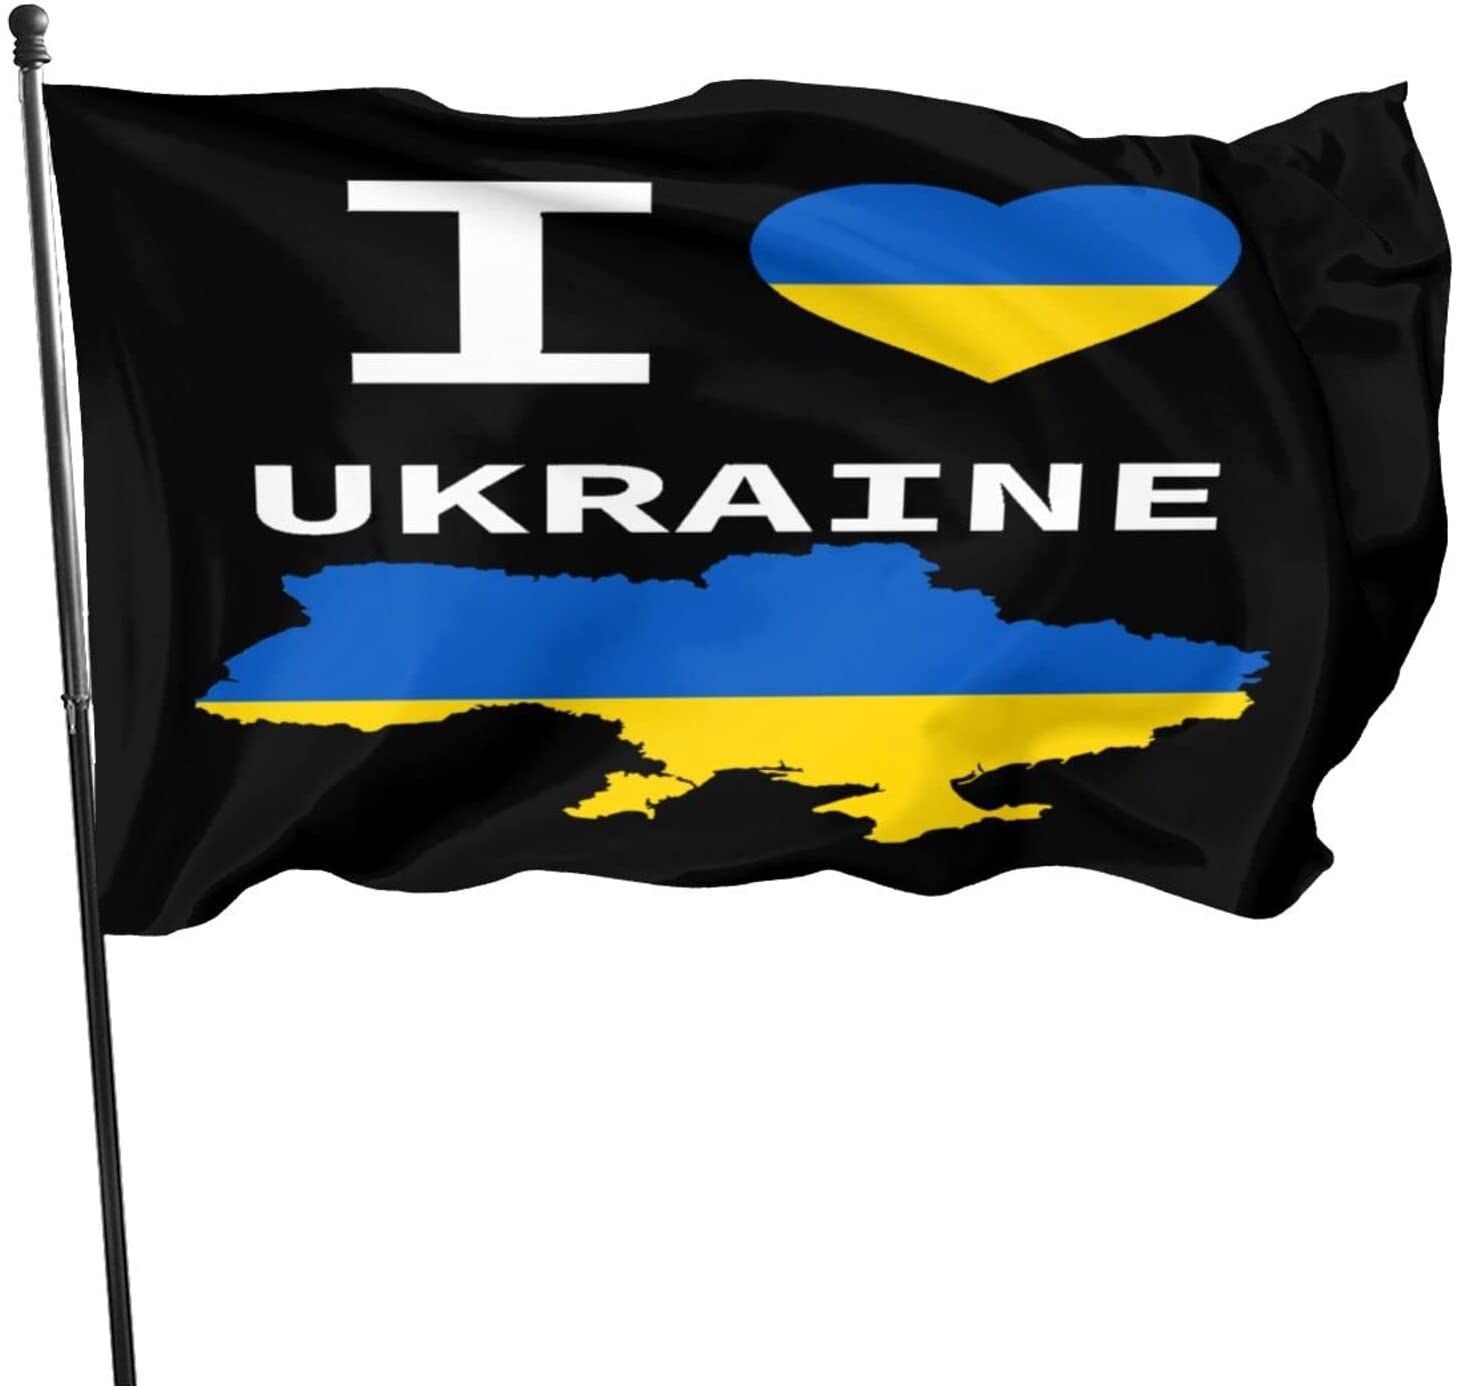 3-I LIEBE UKRAINE